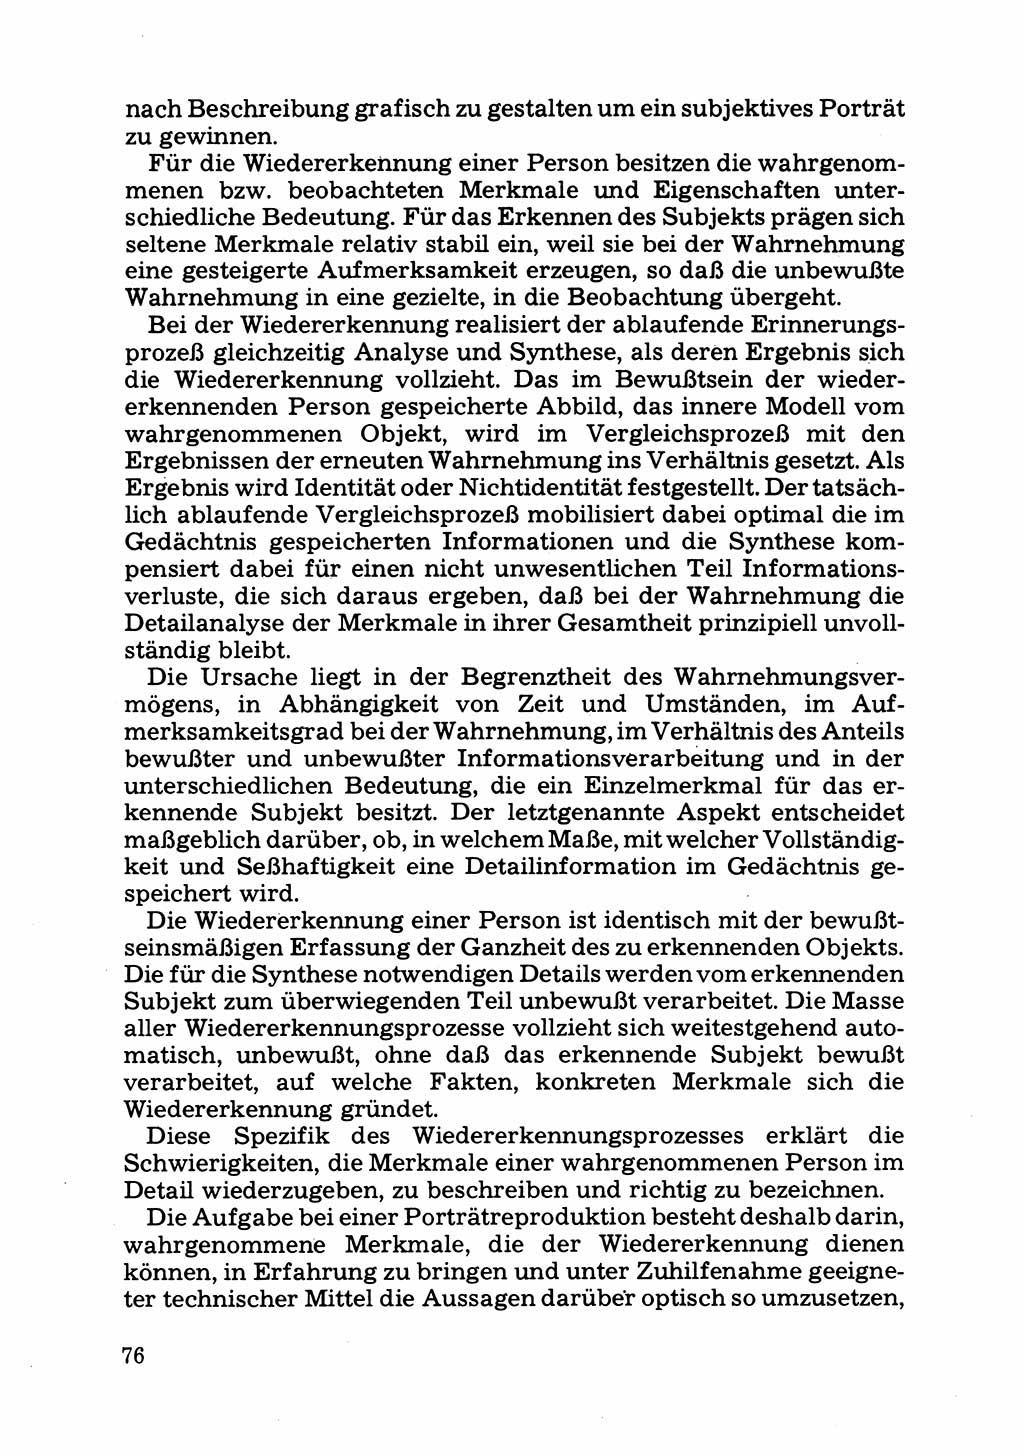 Das subjektive Porträt [Deutsche Demokratische Republik (DDR)] 1981, Seite 76 (Subj. Port. DDR 1981, S. 76)